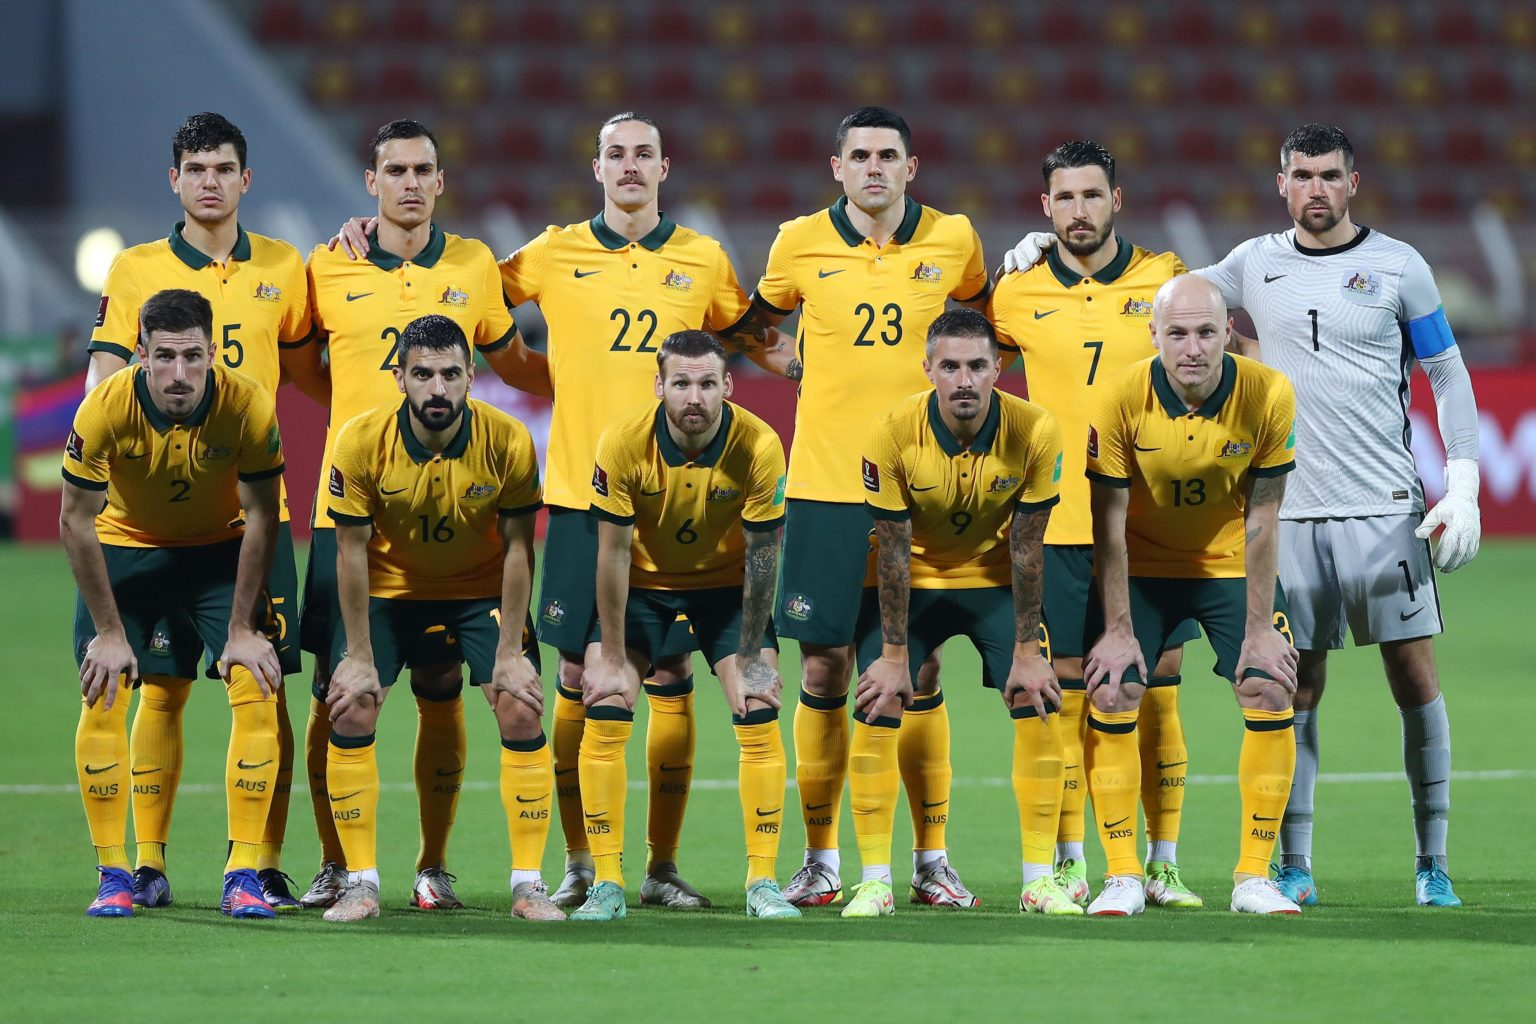 Đội tuyển bóng đá quốc gia Úc (Australia) xếp 29 thế giới và thứ 4 châu Á 